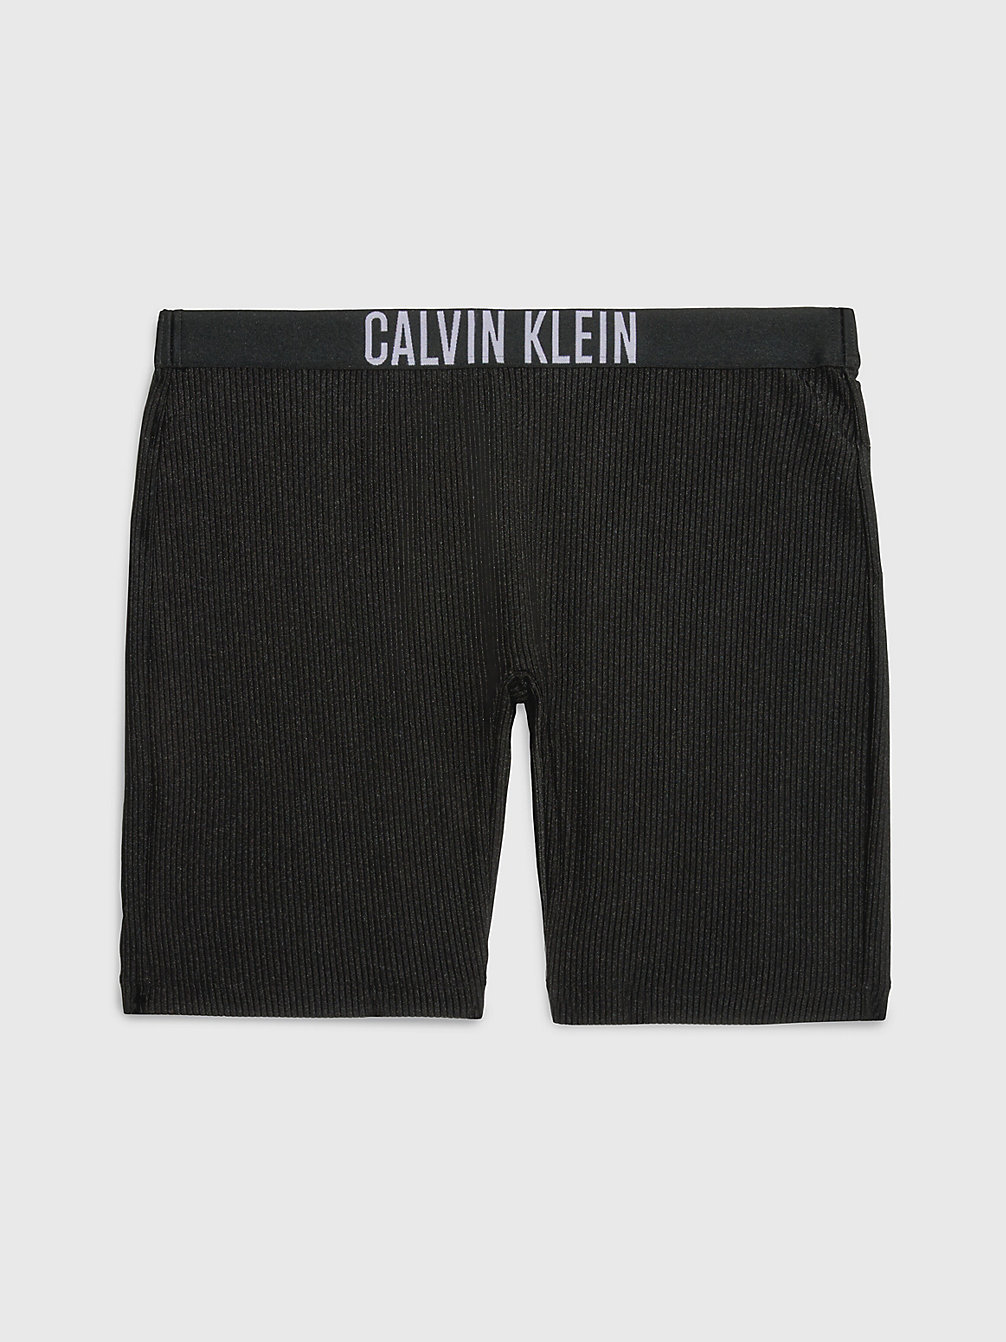 PVH BLACK > Swim Shorts - Intense Power > undefined Женщины - Calvin Klein